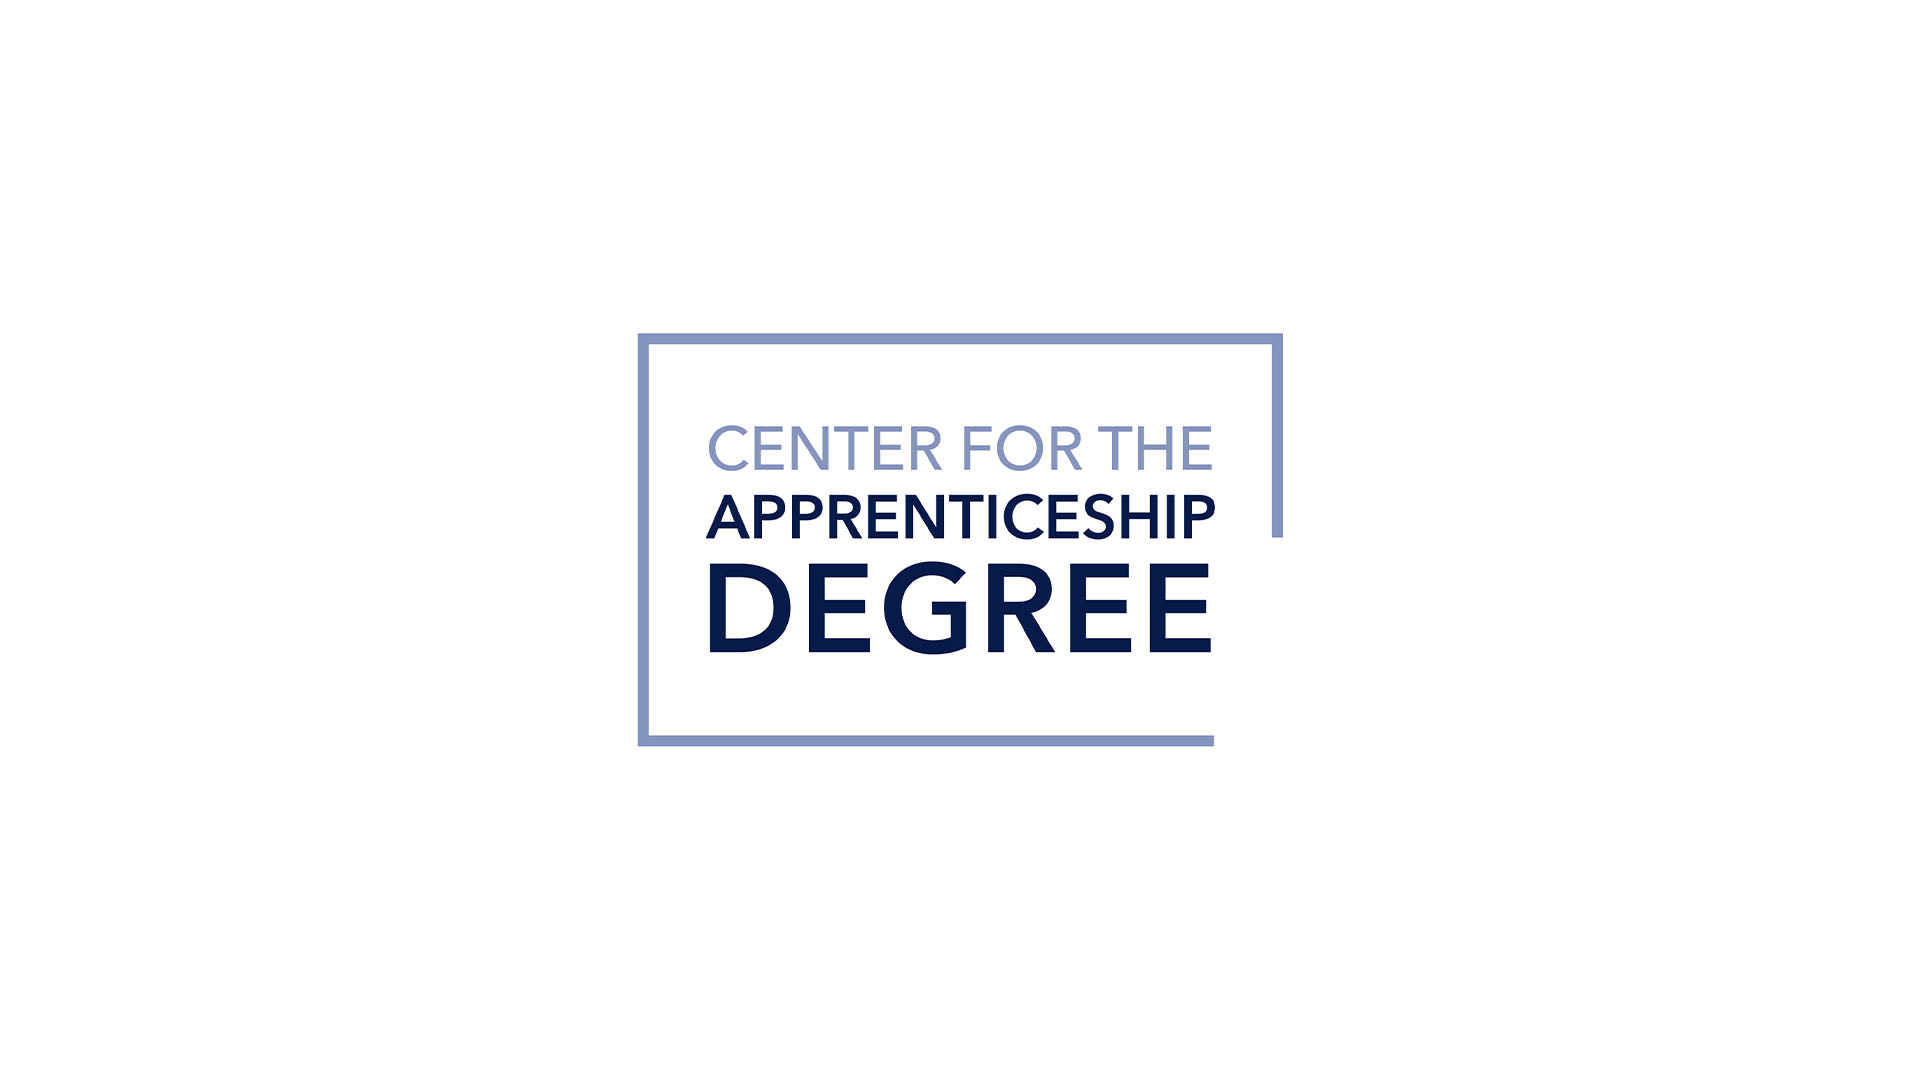 Center for the Apprenticeship Degree